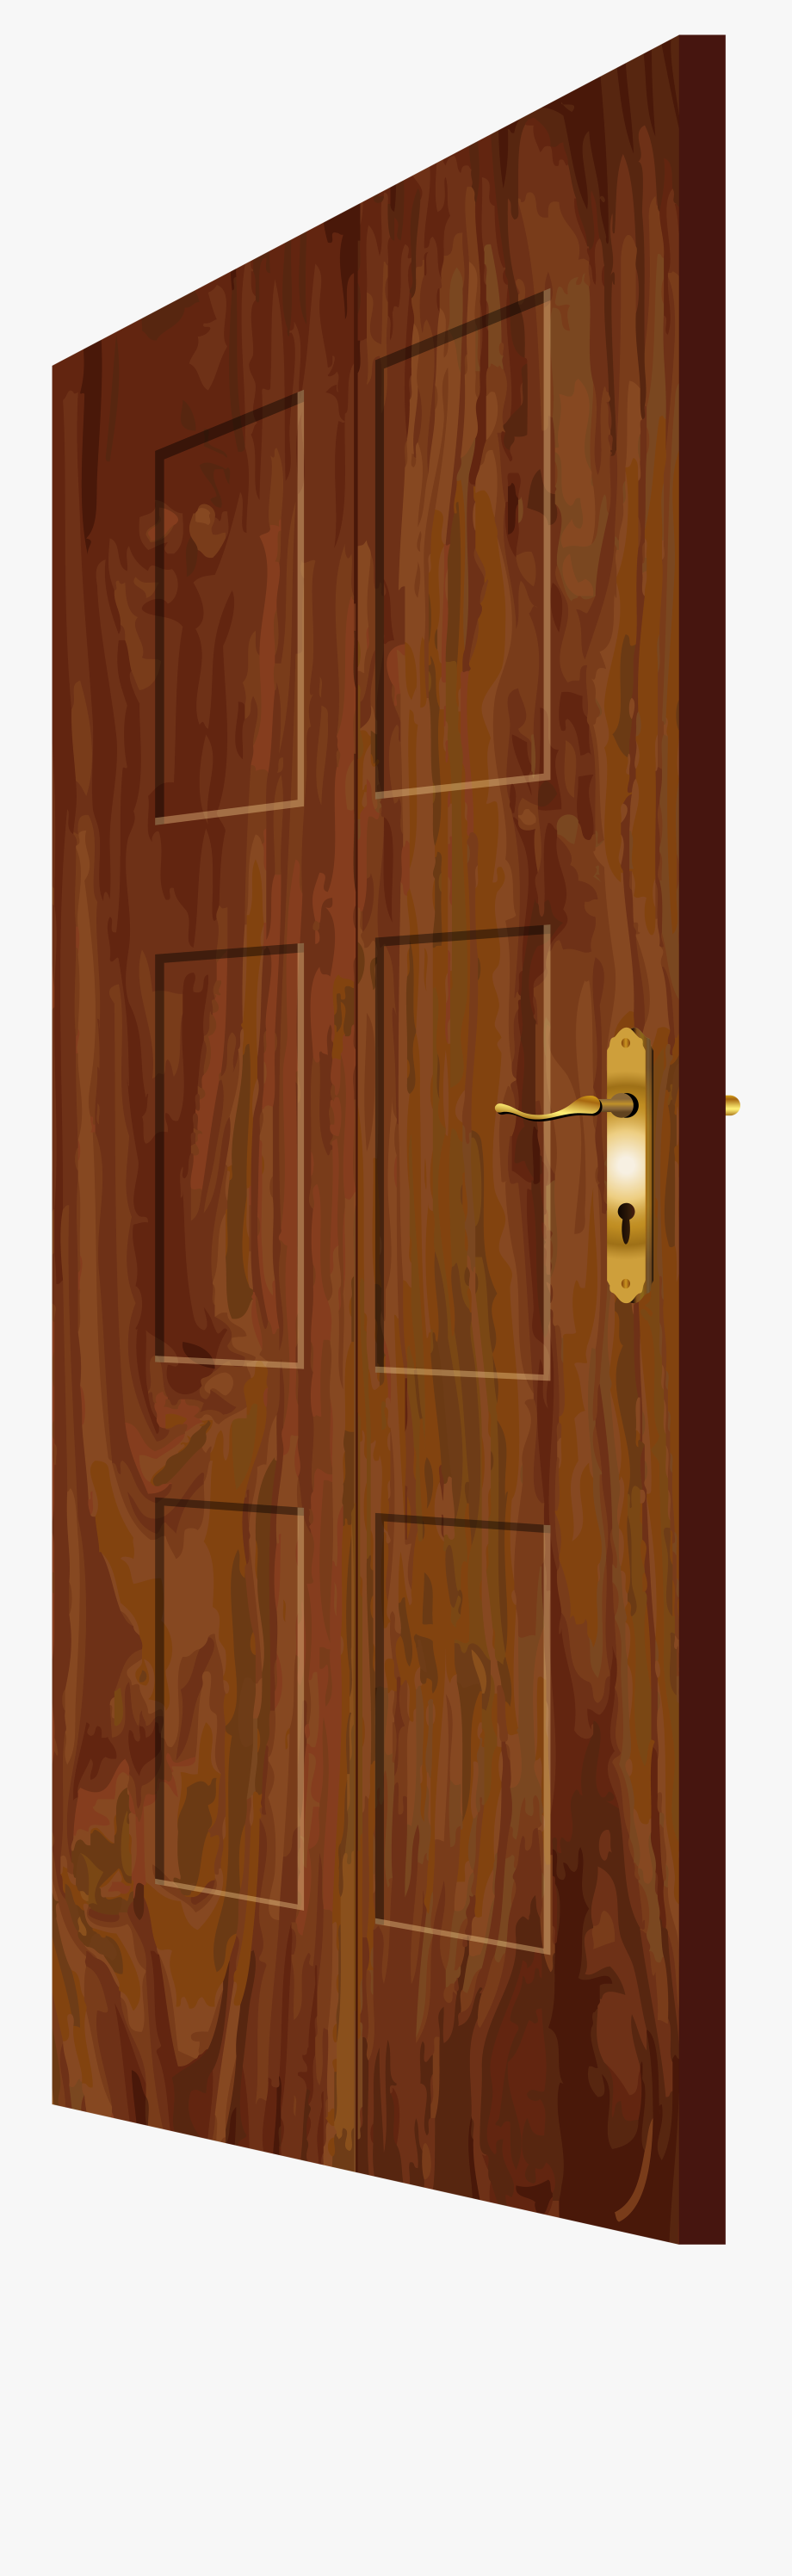 door clipart wood door